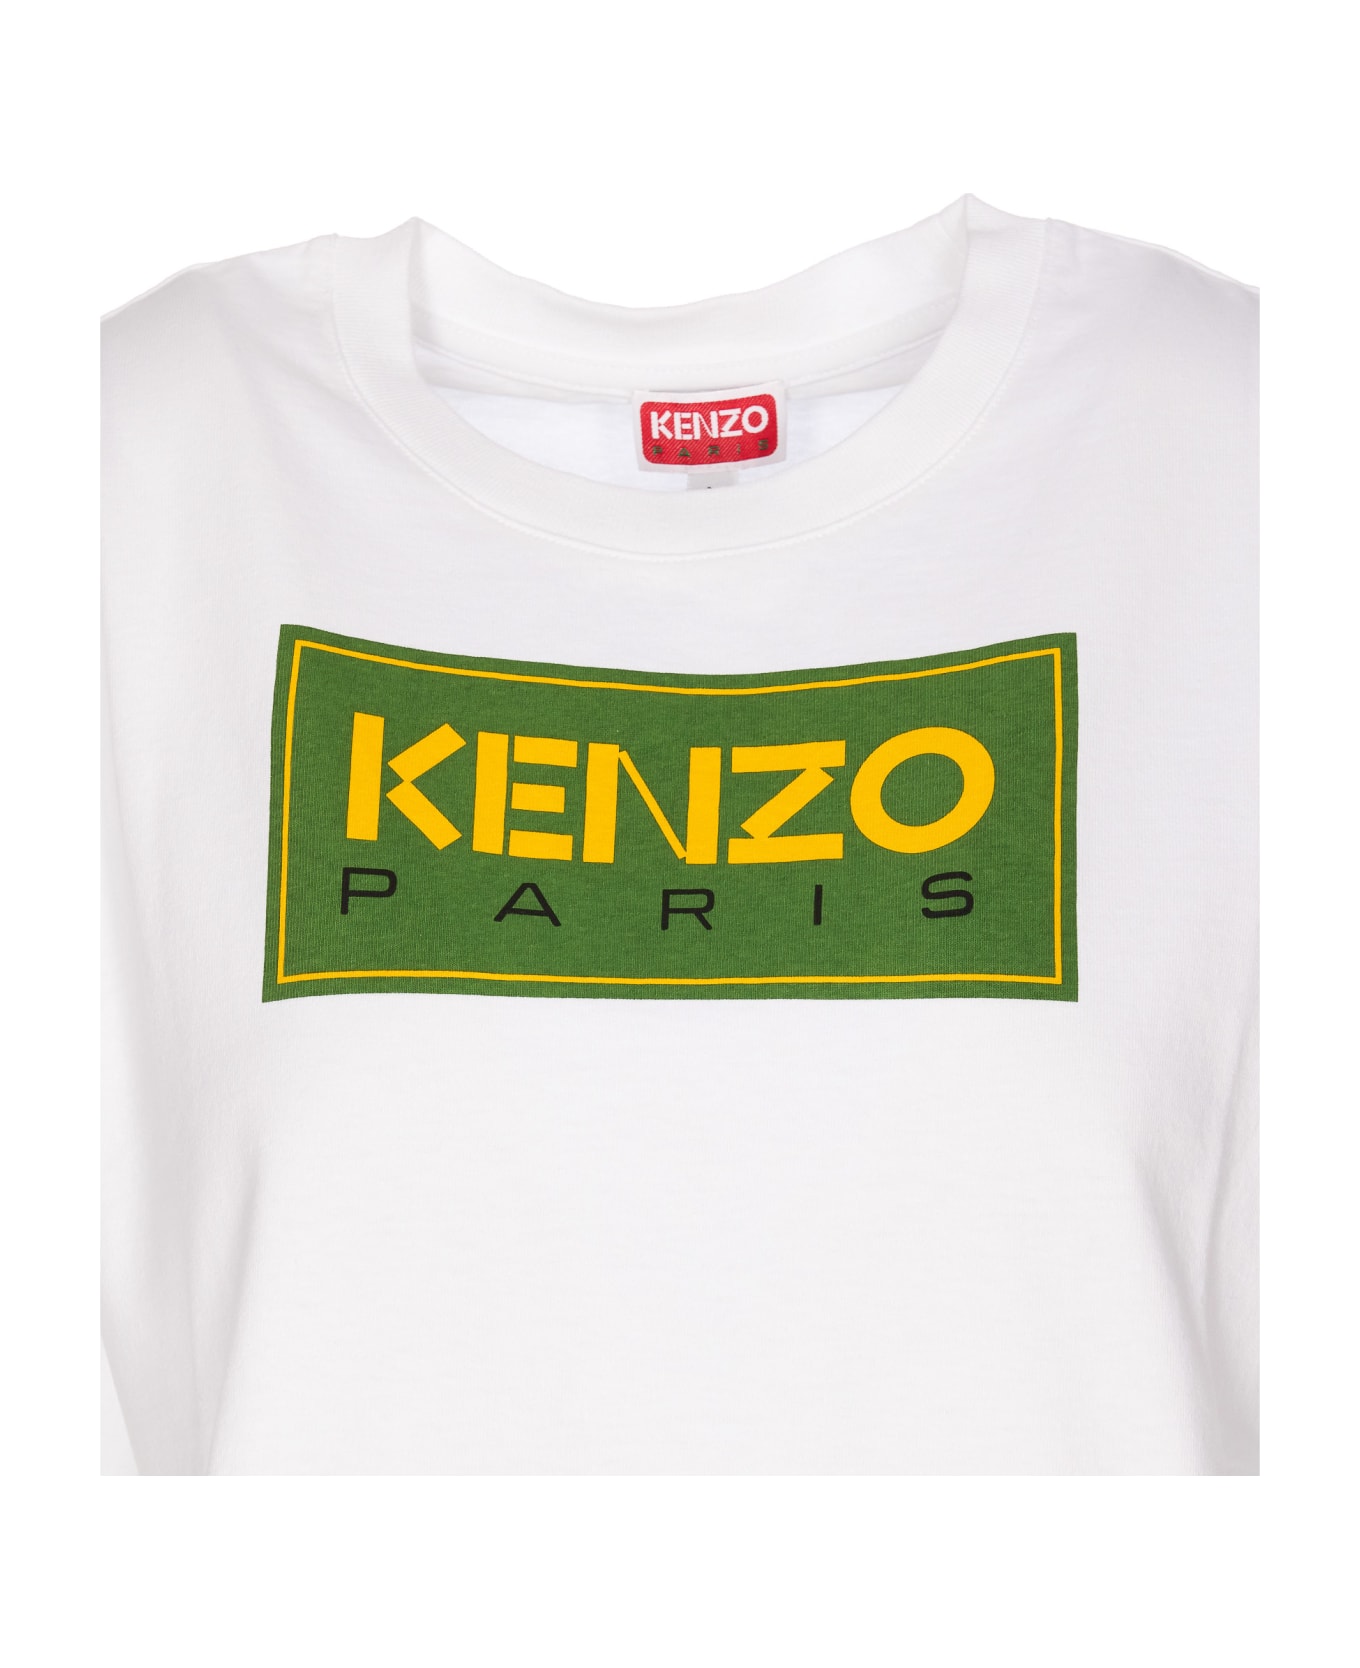 Kenzo Paris Loose T-shirt - White